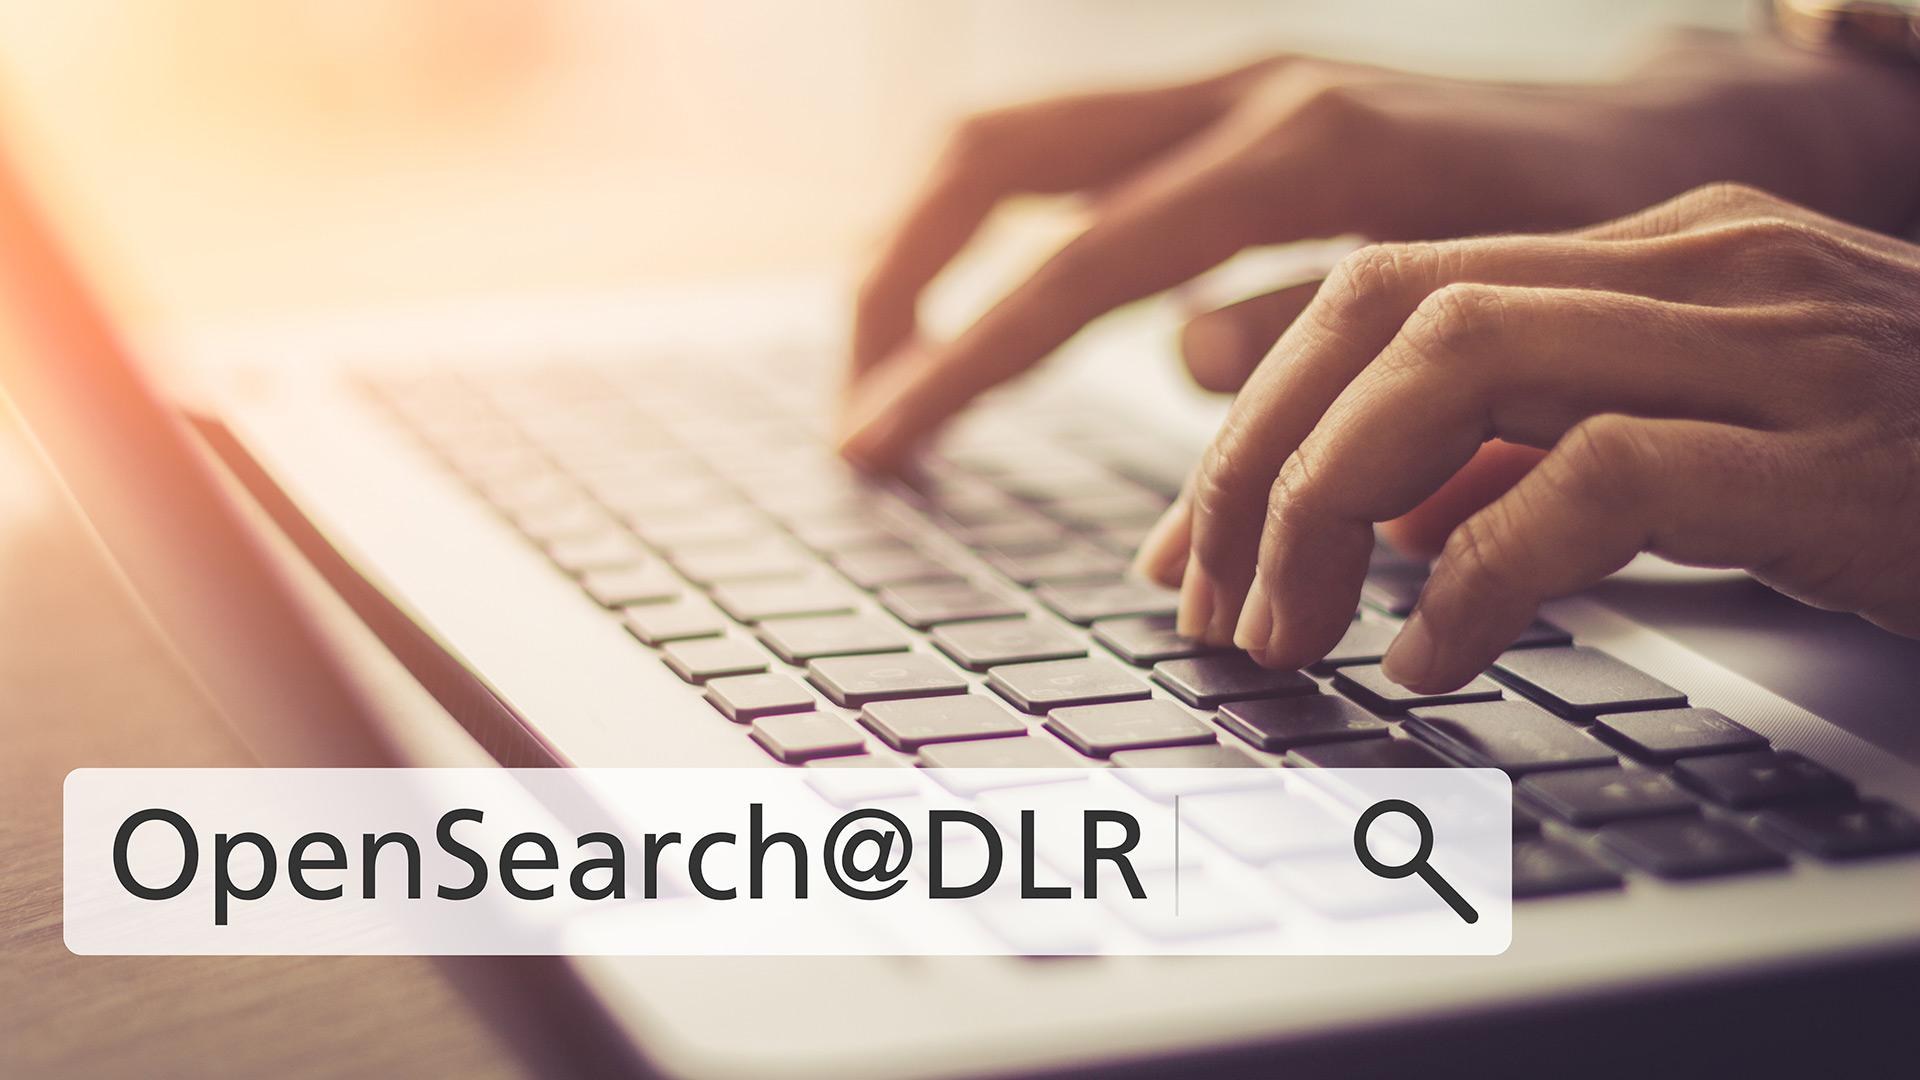 Projekt OpenSearch@DLR